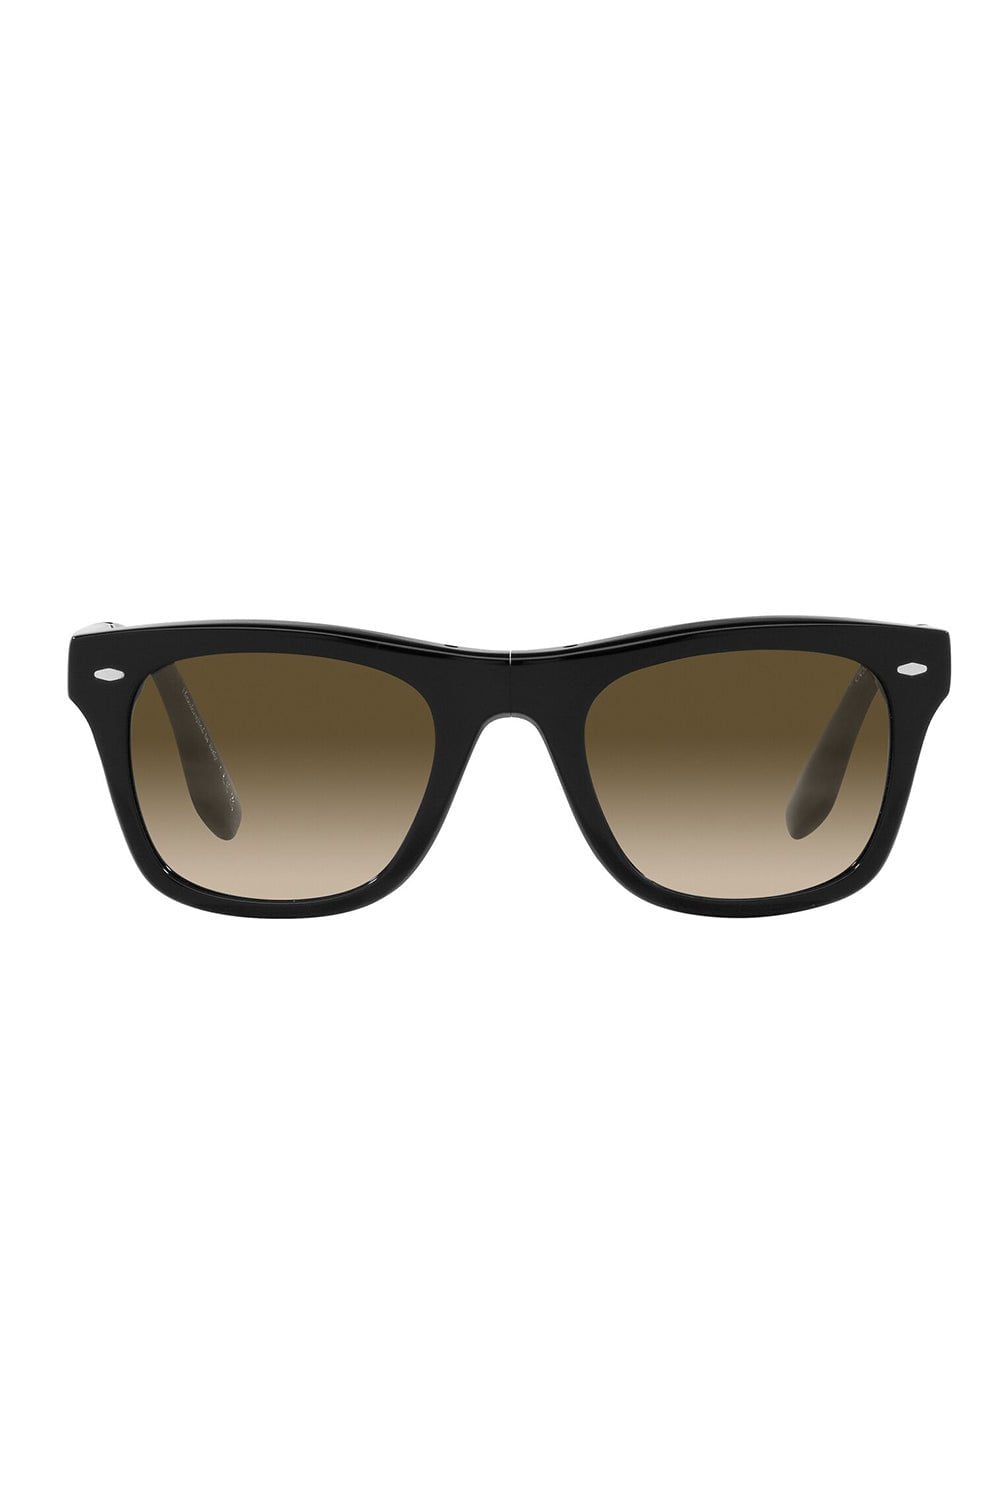 OLIVER PEOPLES-Mister Brunello Folding Sunglasses - Black Chrome Olive-BLACK\CHROME OLIVE PHOTOCROMIC